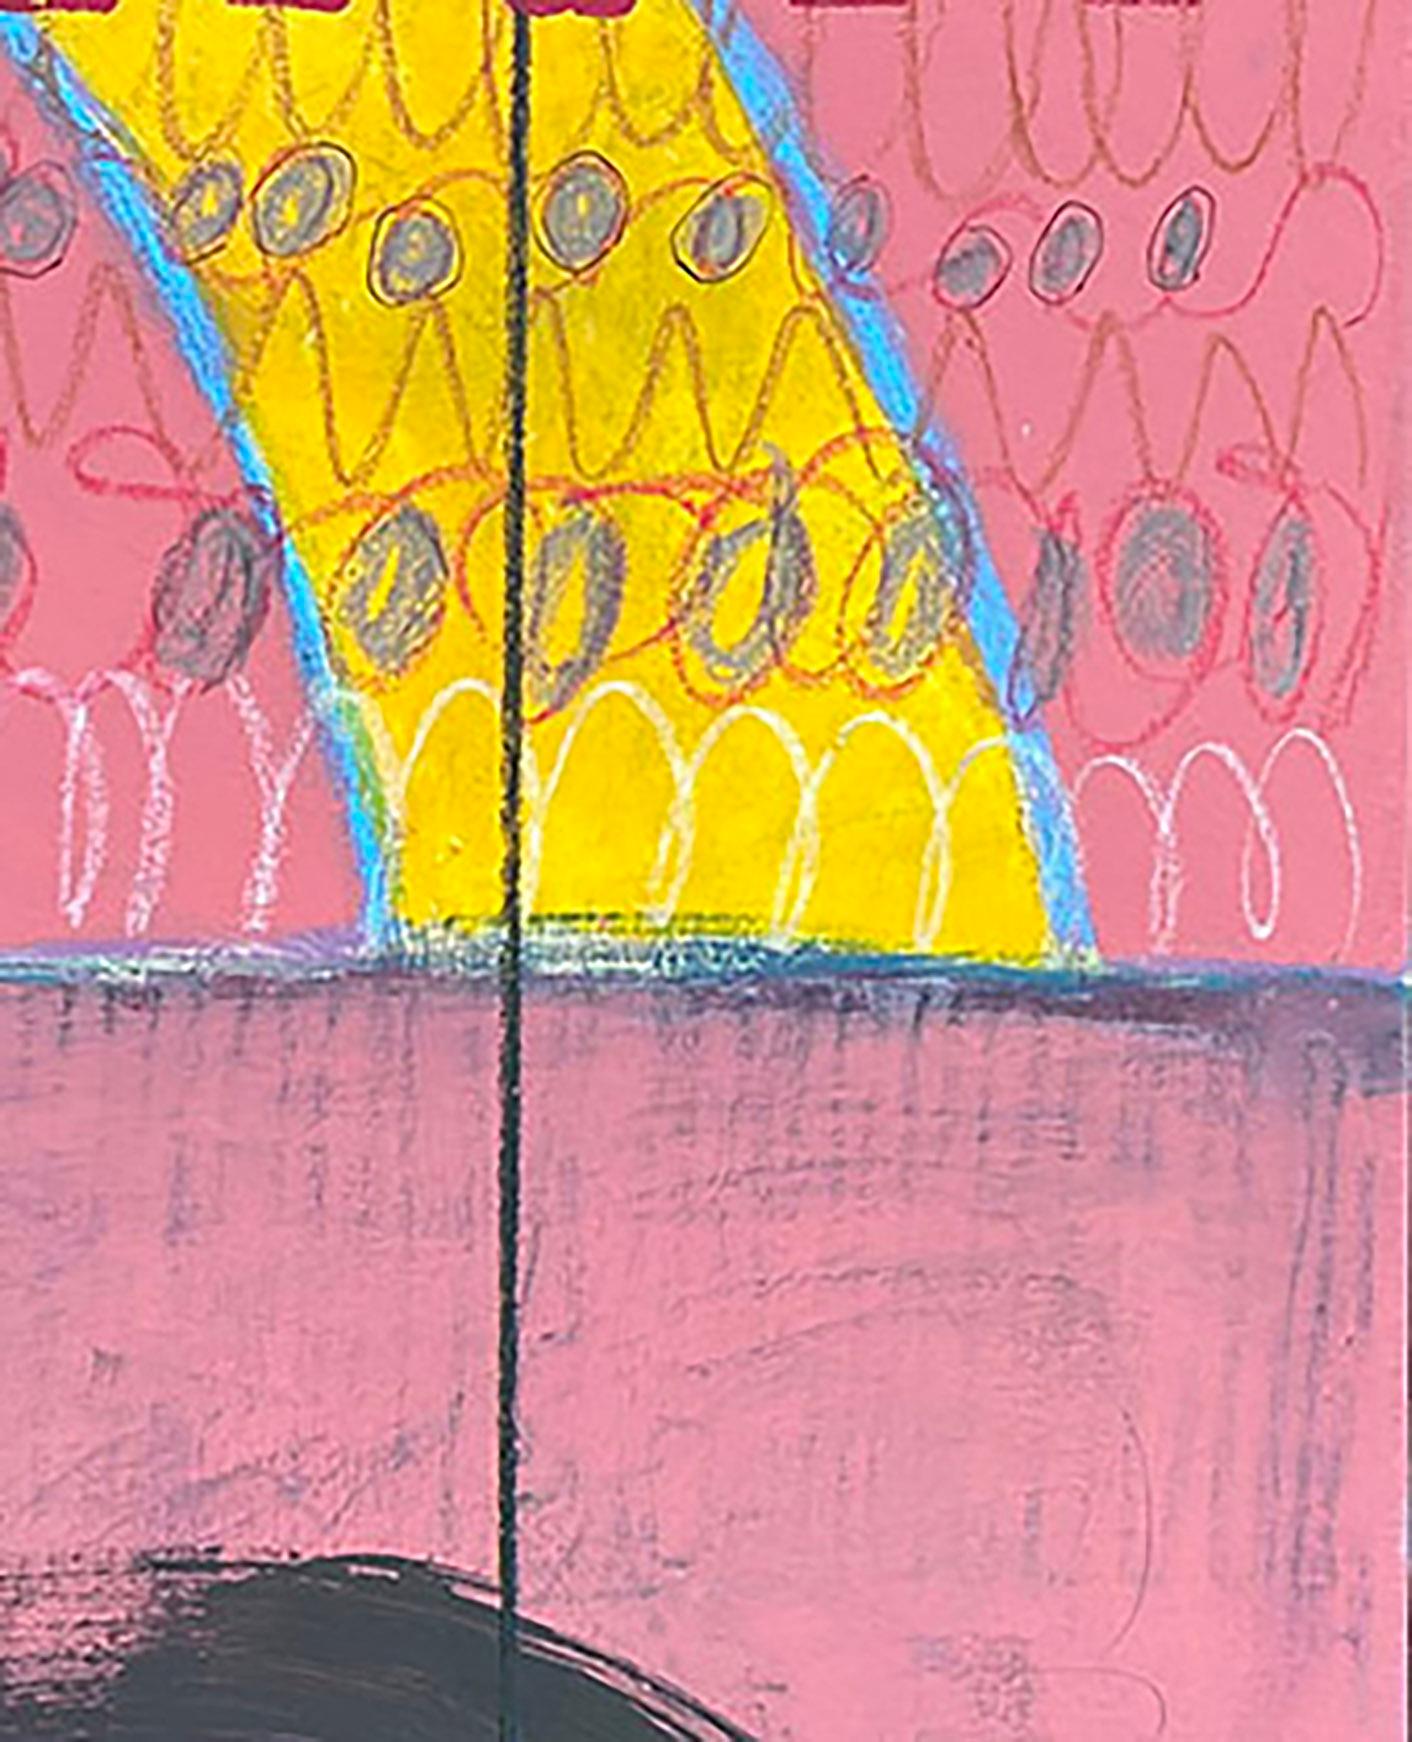 Raise The Bar #1, rosa, schwarz, gemustert, gelb, Schrift, blau (Geometrische Abstraktion), Painting, von Ted Dixon